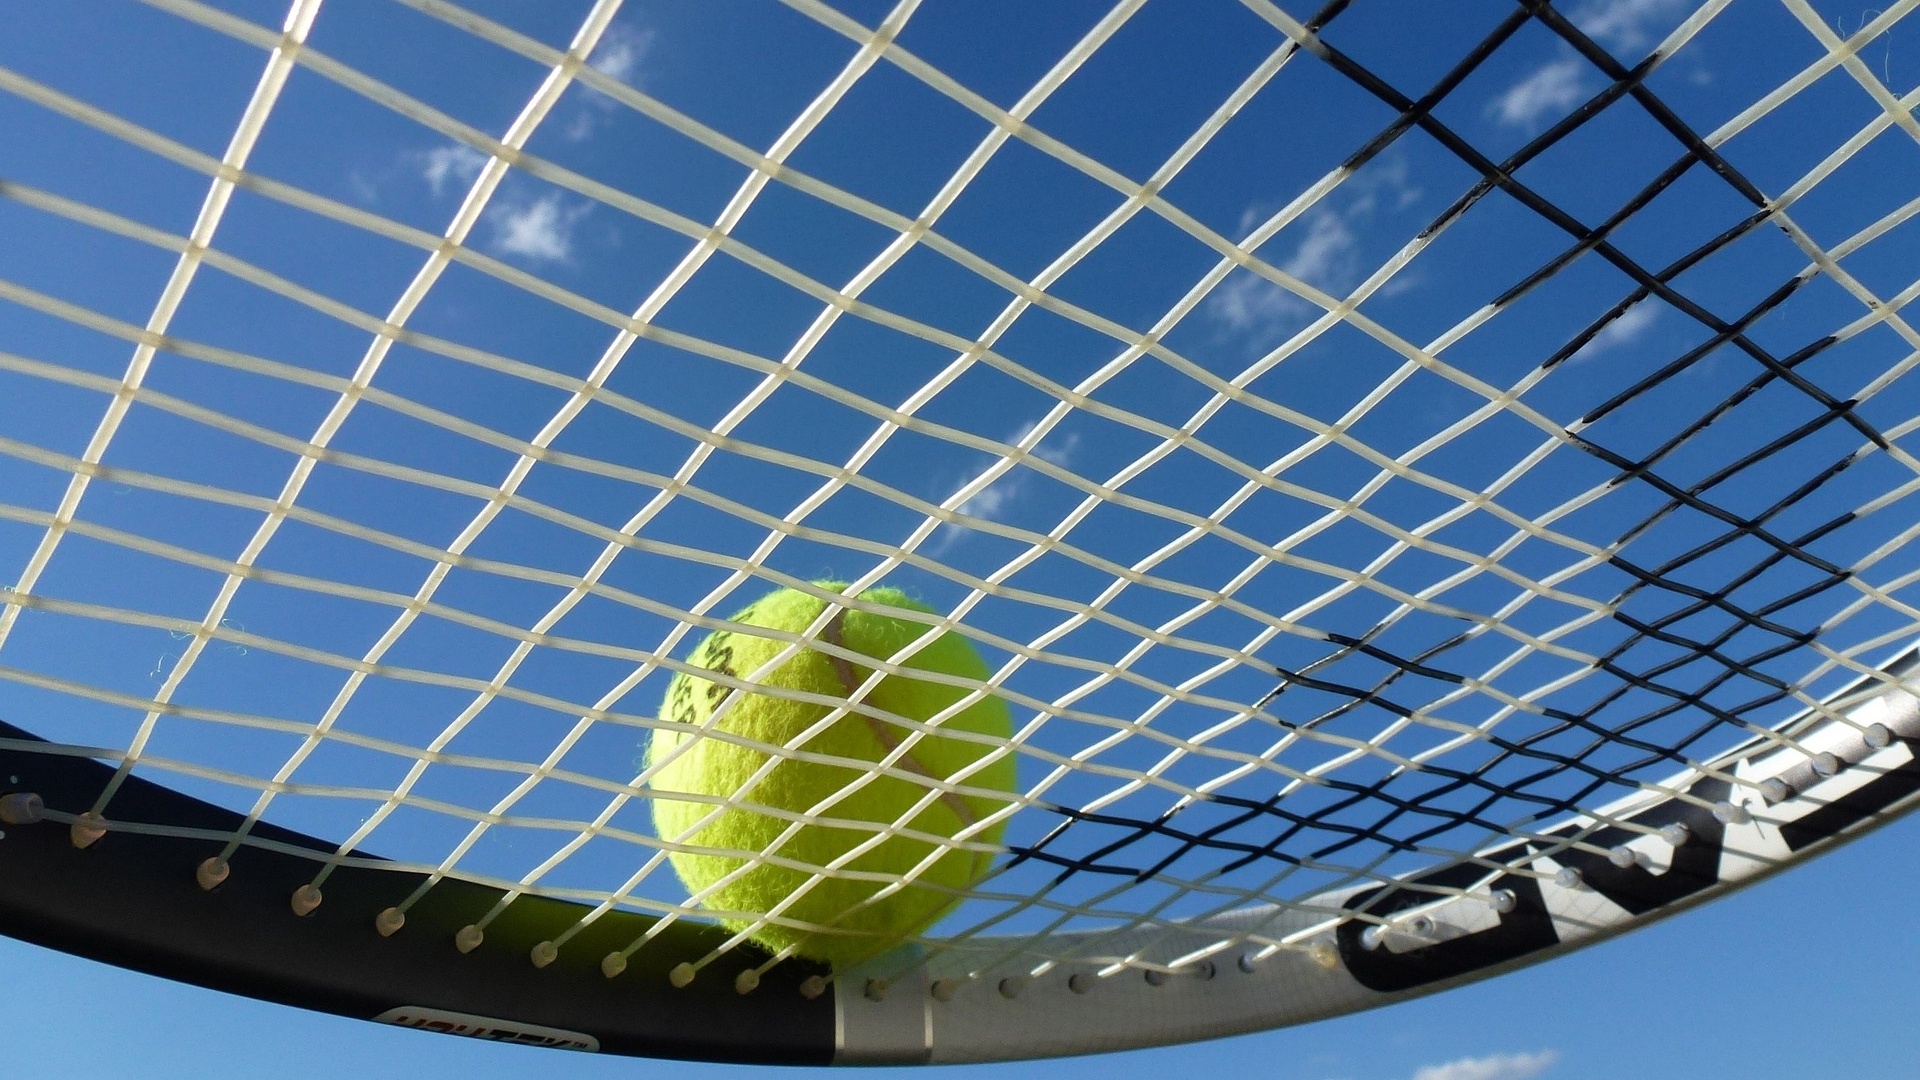 W 2. rundzie tenisowego turnieju French Open, Hubert Hurkacz zagra z Holendrem Tallonem Griekspoorem.